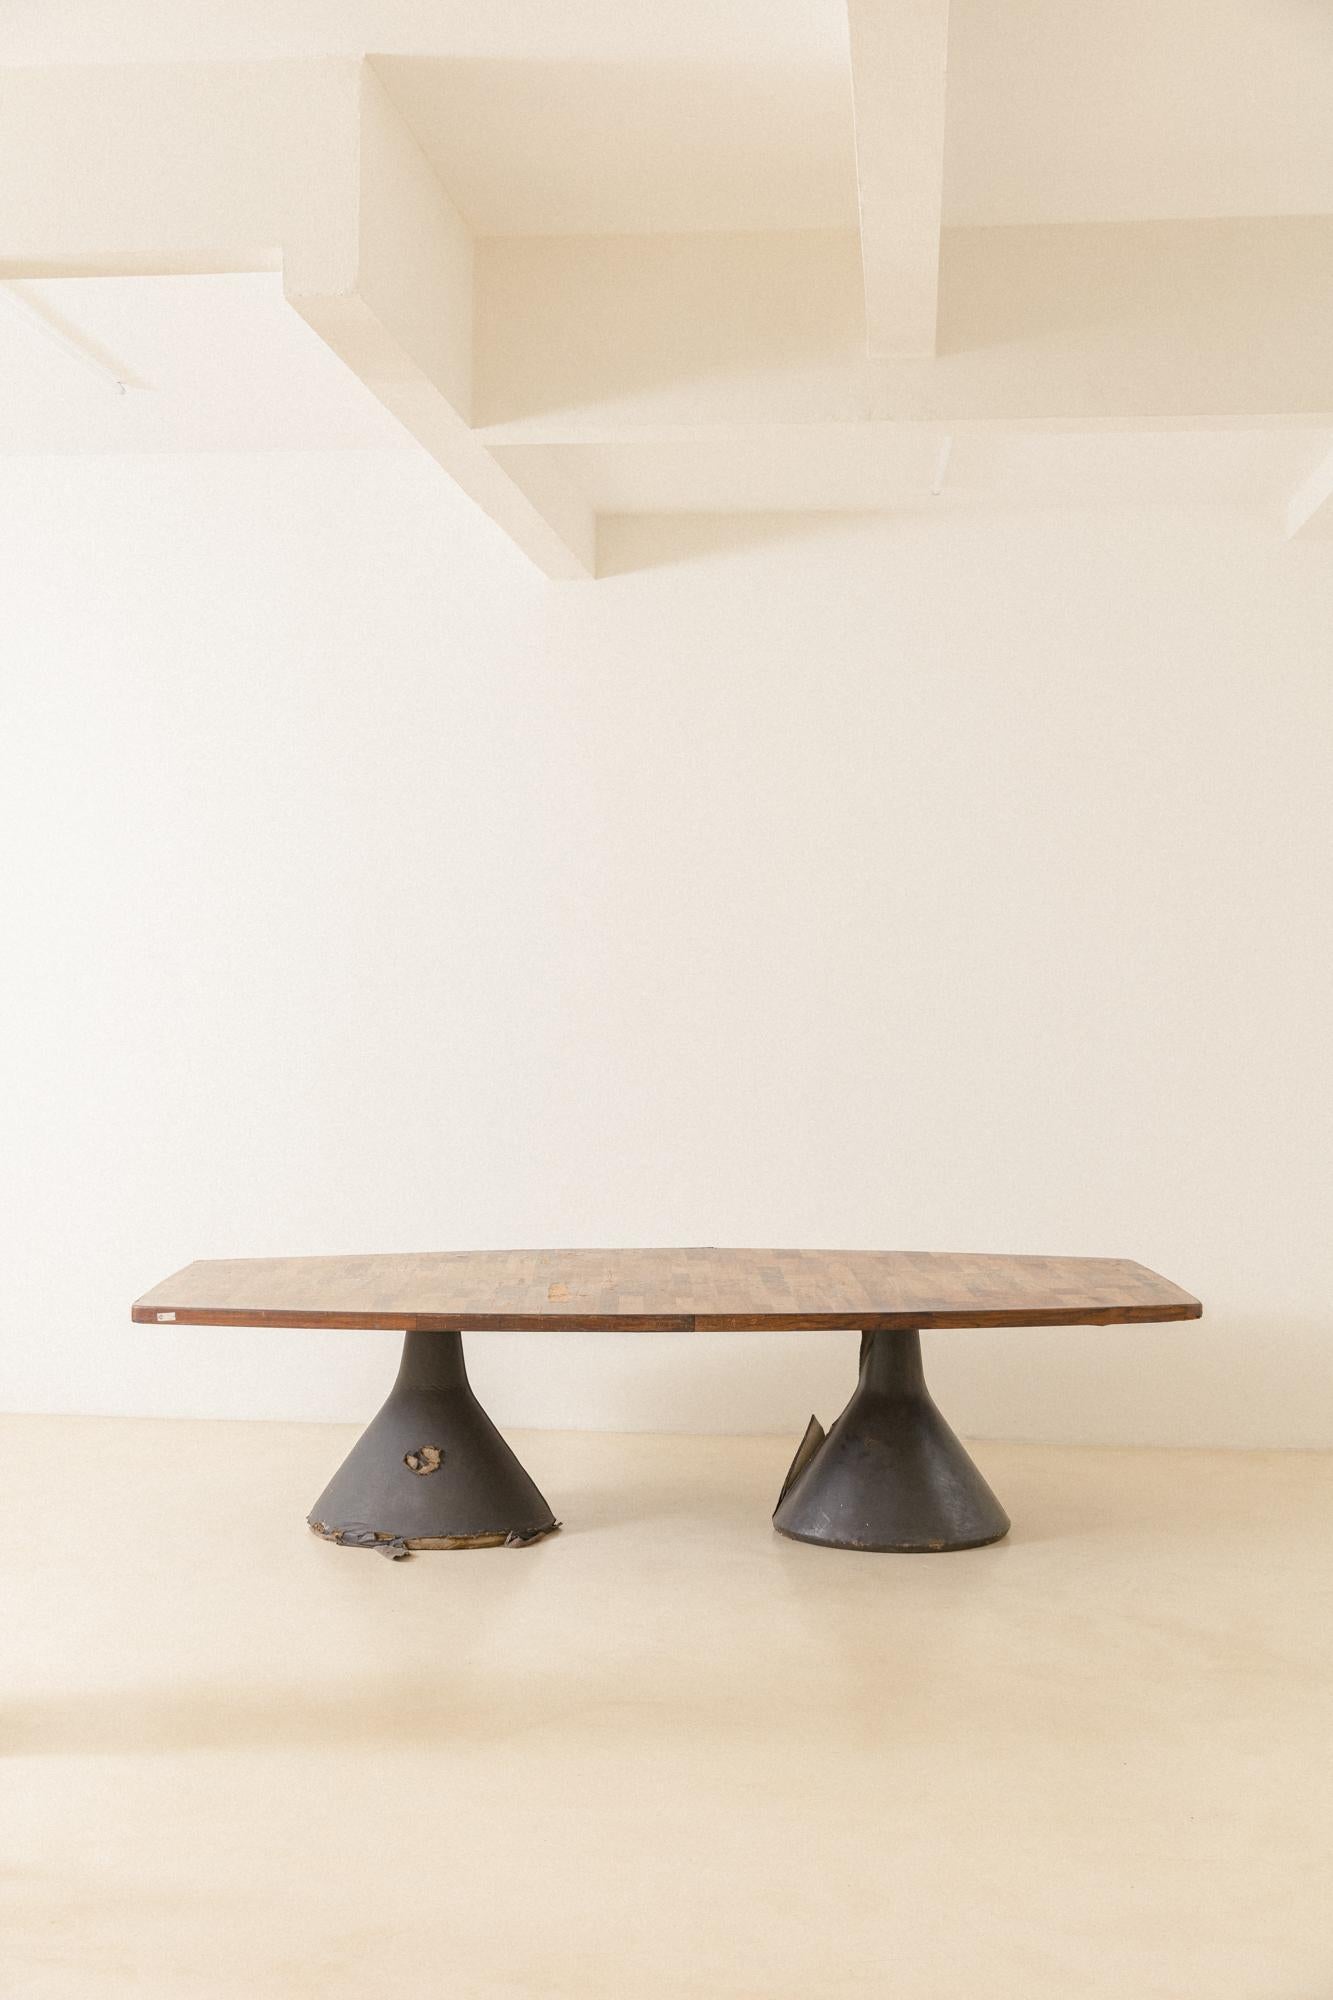 L'emblématique Guanabara est une table conçue par Jorge Zalszupin (1922-2020) en 1959 et produite par son entreprise, L'atelier. Un long plateau en patchwork de bois de rose repose sur deux bases en béton recouvertes de cuir noir.

Cette solution de